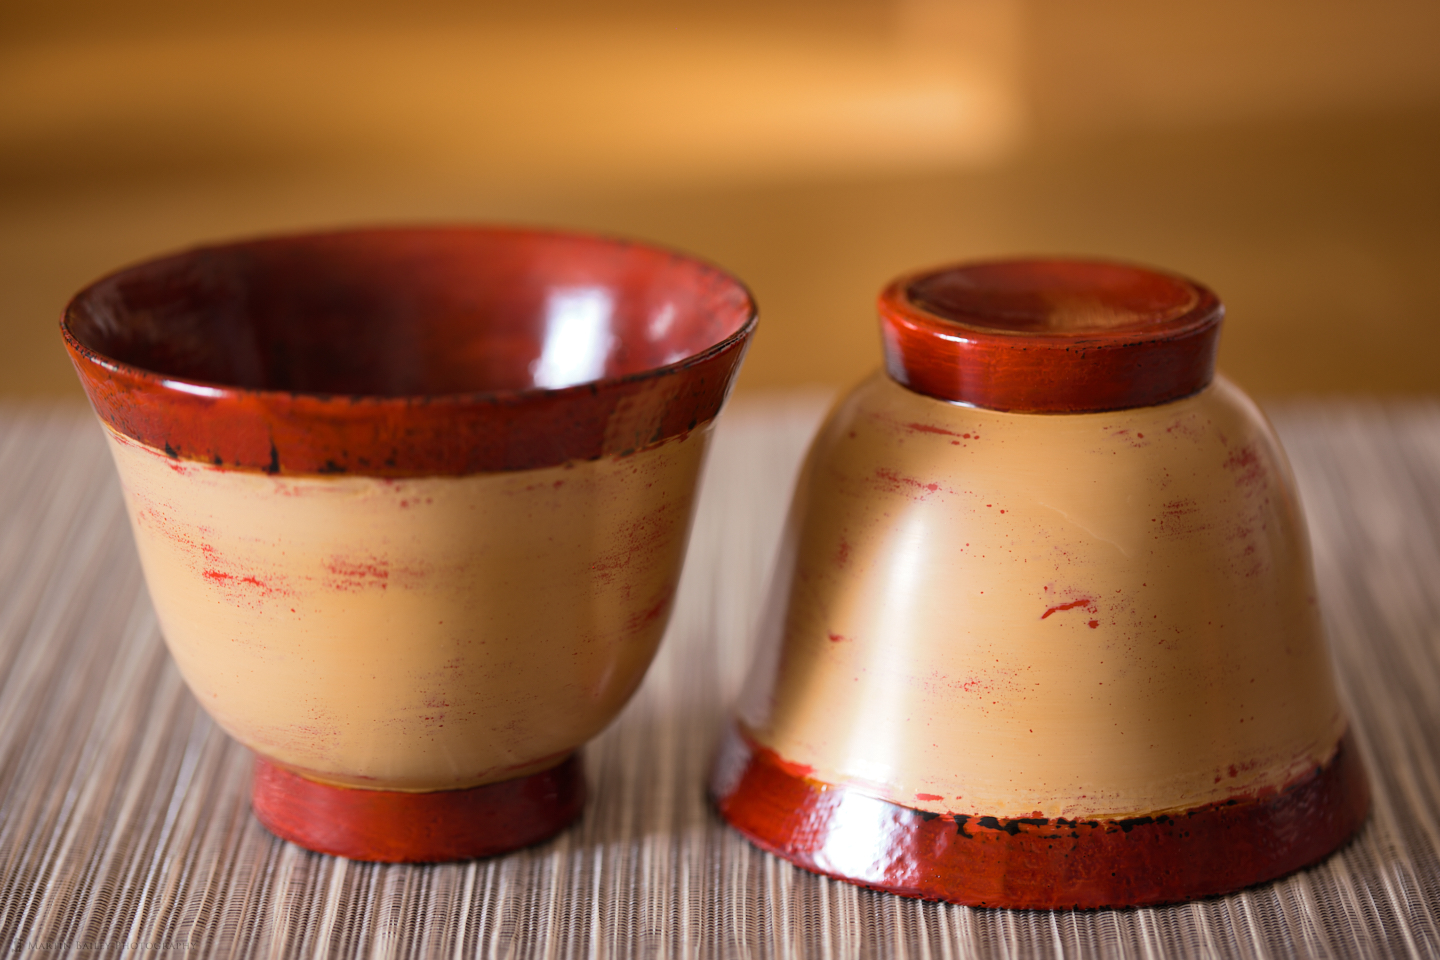 Aizunuri Lacquerware Bowls